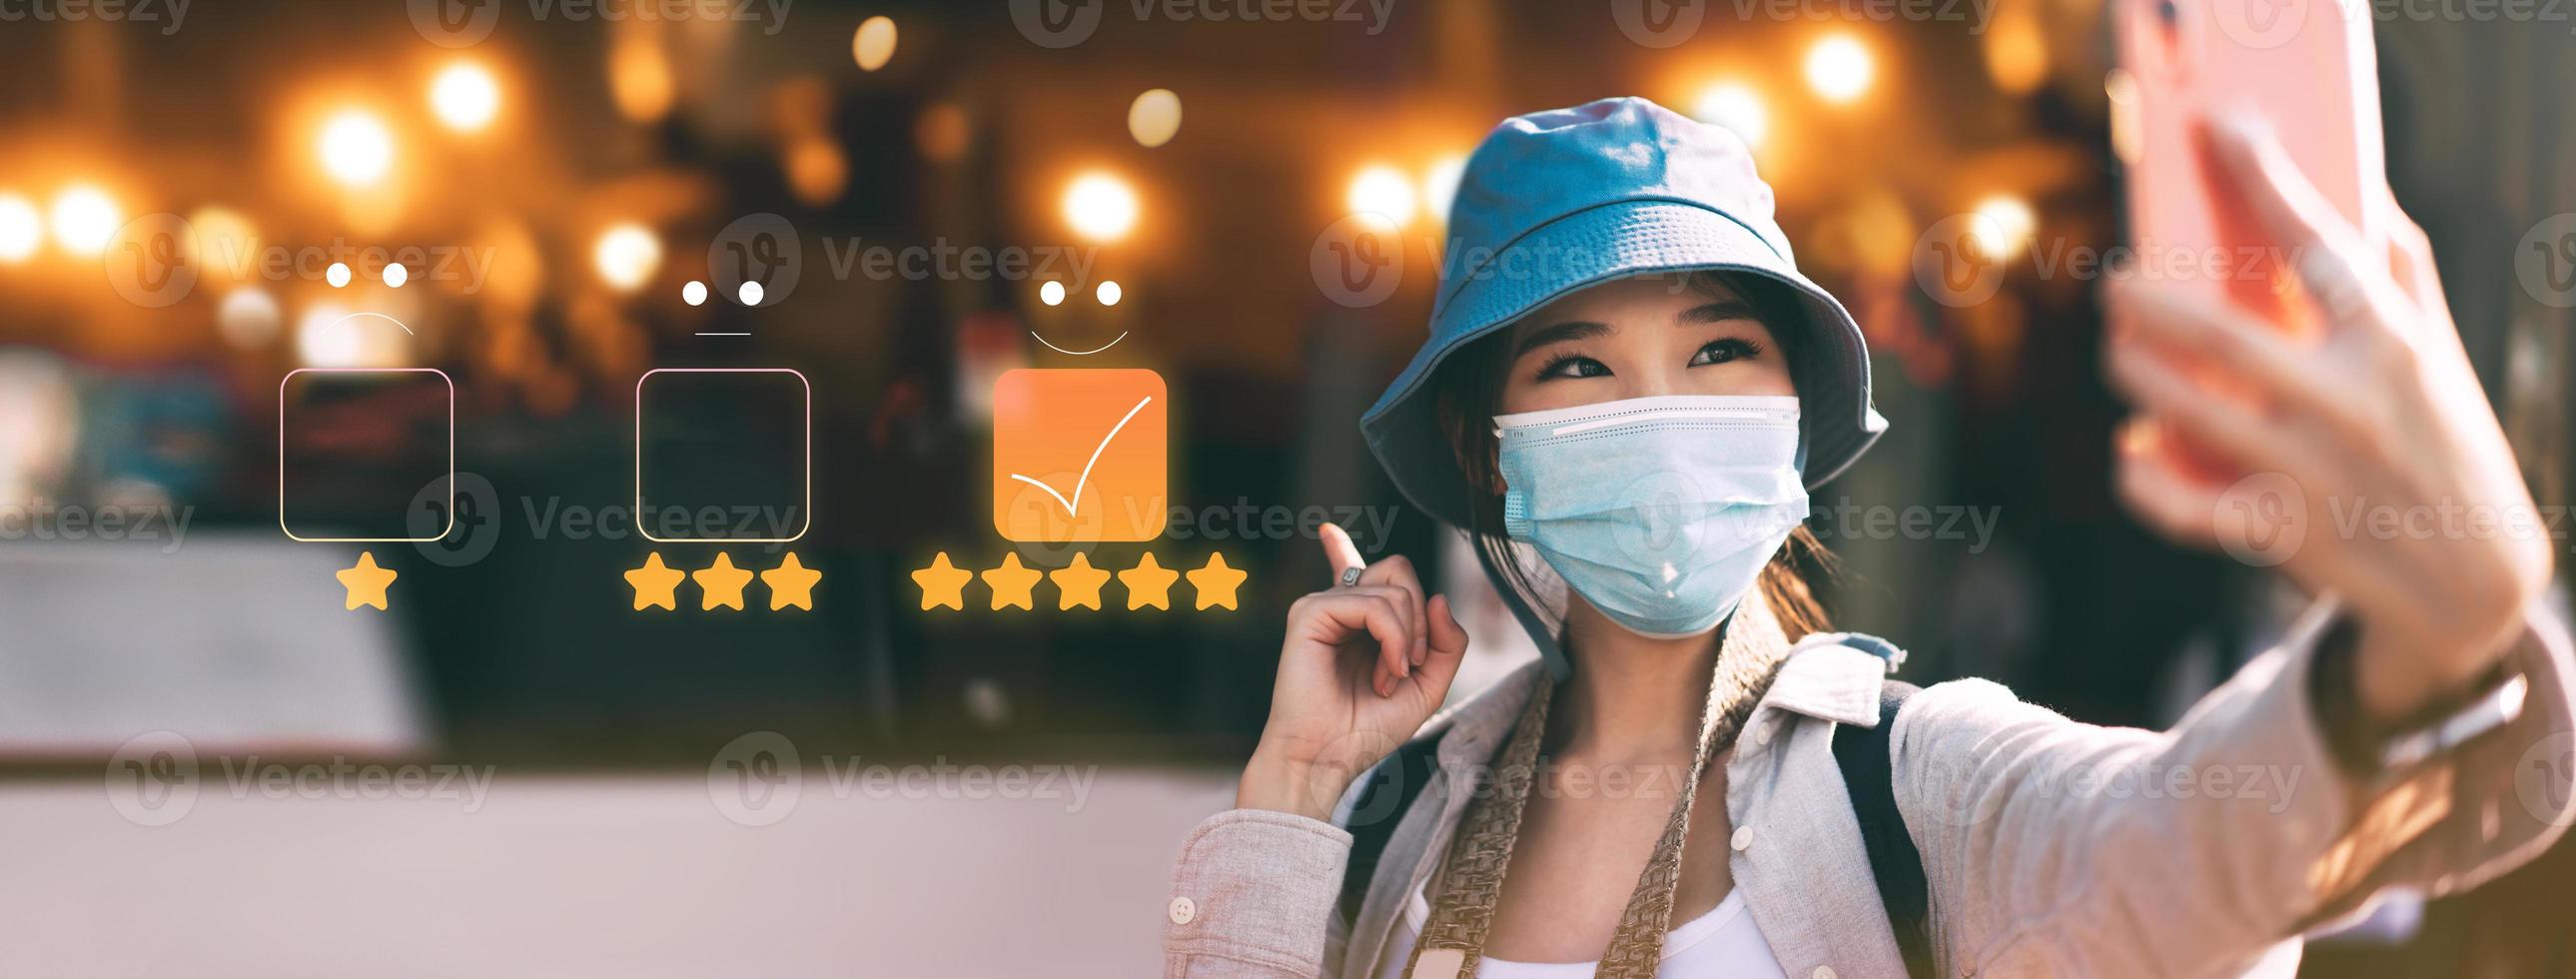 mujer asiática adulta joven que viaja usa mascarilla en la calificación de revisión del cliente servicio de cinco estrellas foto